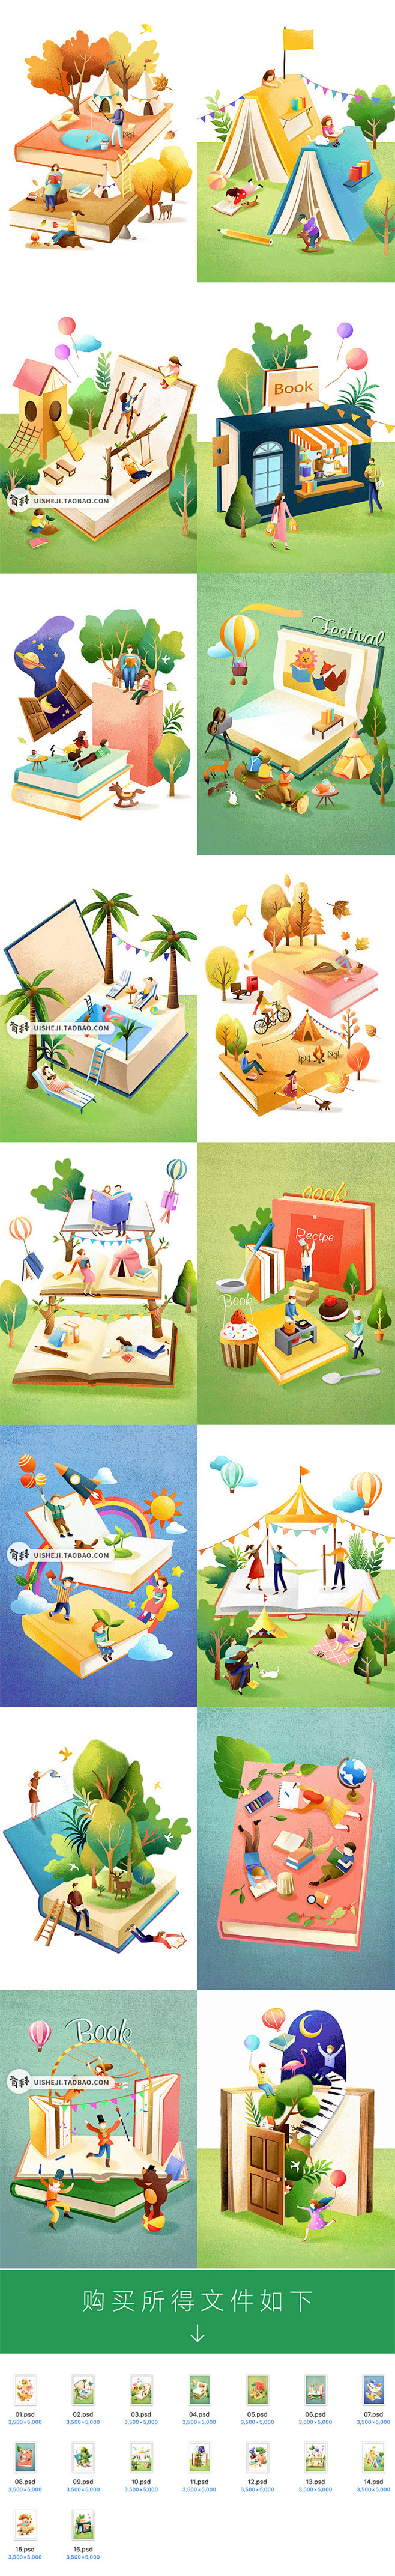 卡通手绘书籍书本阅读读书创意儿童郊游玩耍...